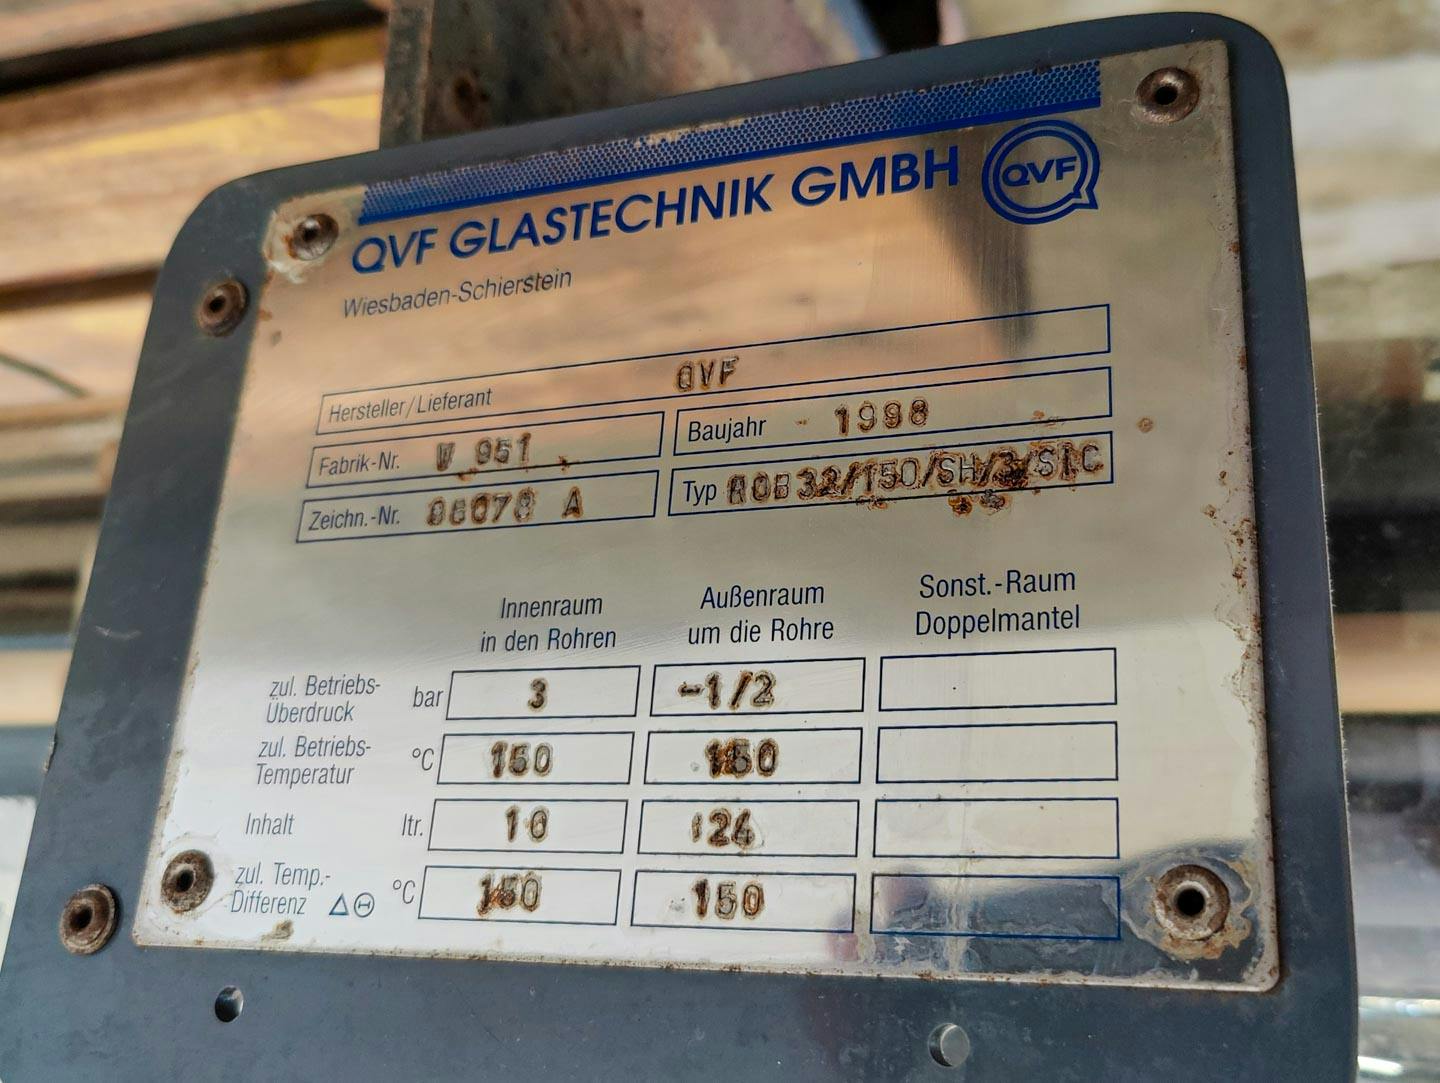 QVF Glasstechnik ROB 32/150/SH/3/SIC - 3,2 m² - Scambiatore di calore a fascio tubiero - image 9